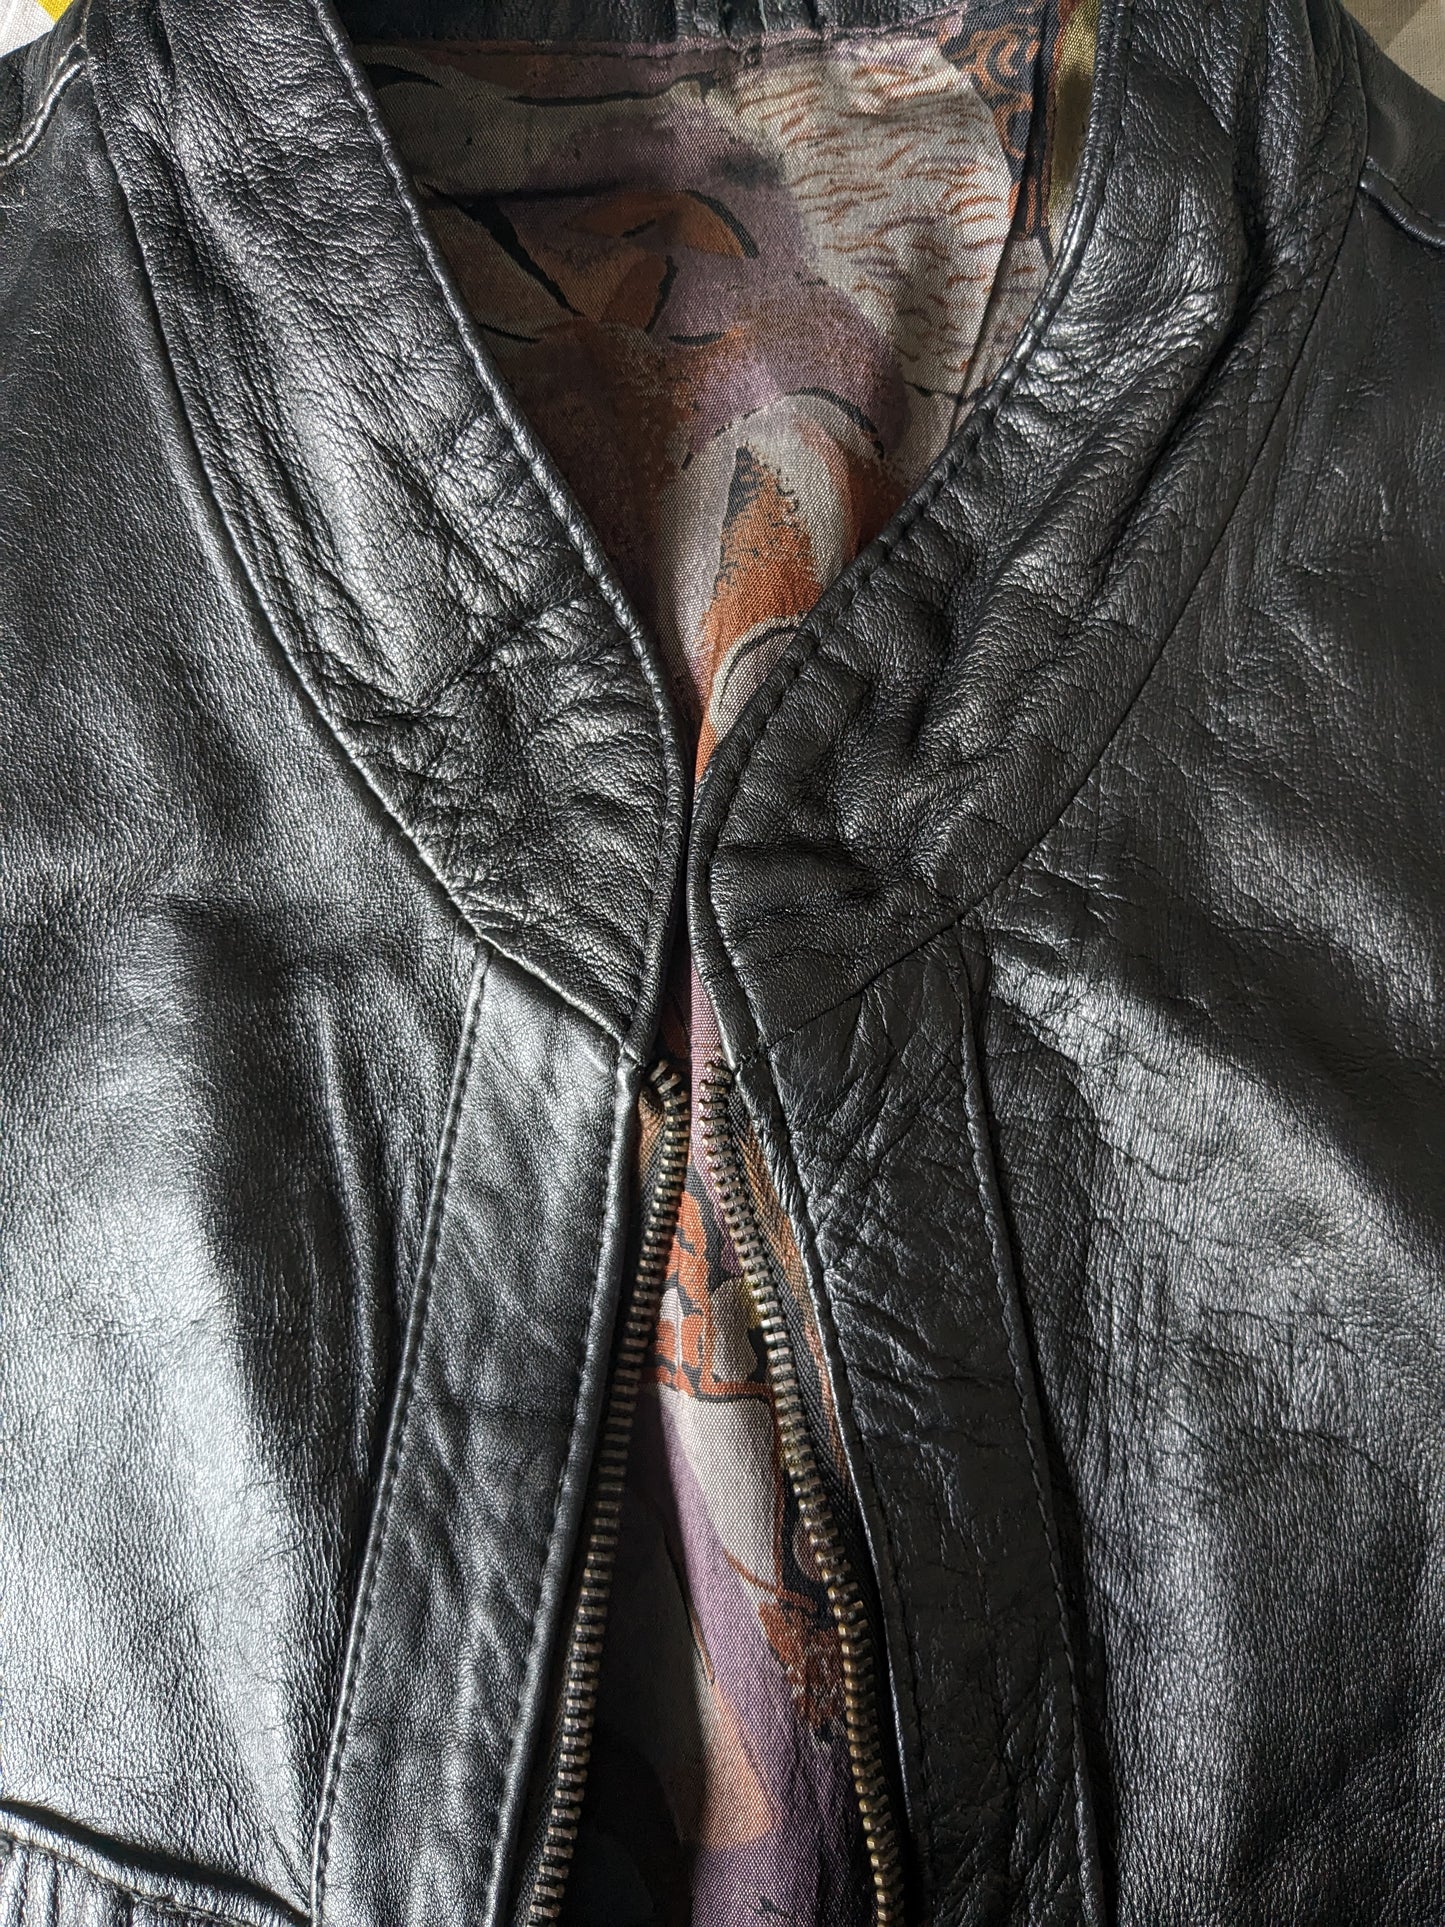 Calzatura del corpo a metà lunghezza in pelle vintage con borse. Colorato nero. Taglia L. 1 tasca interna.